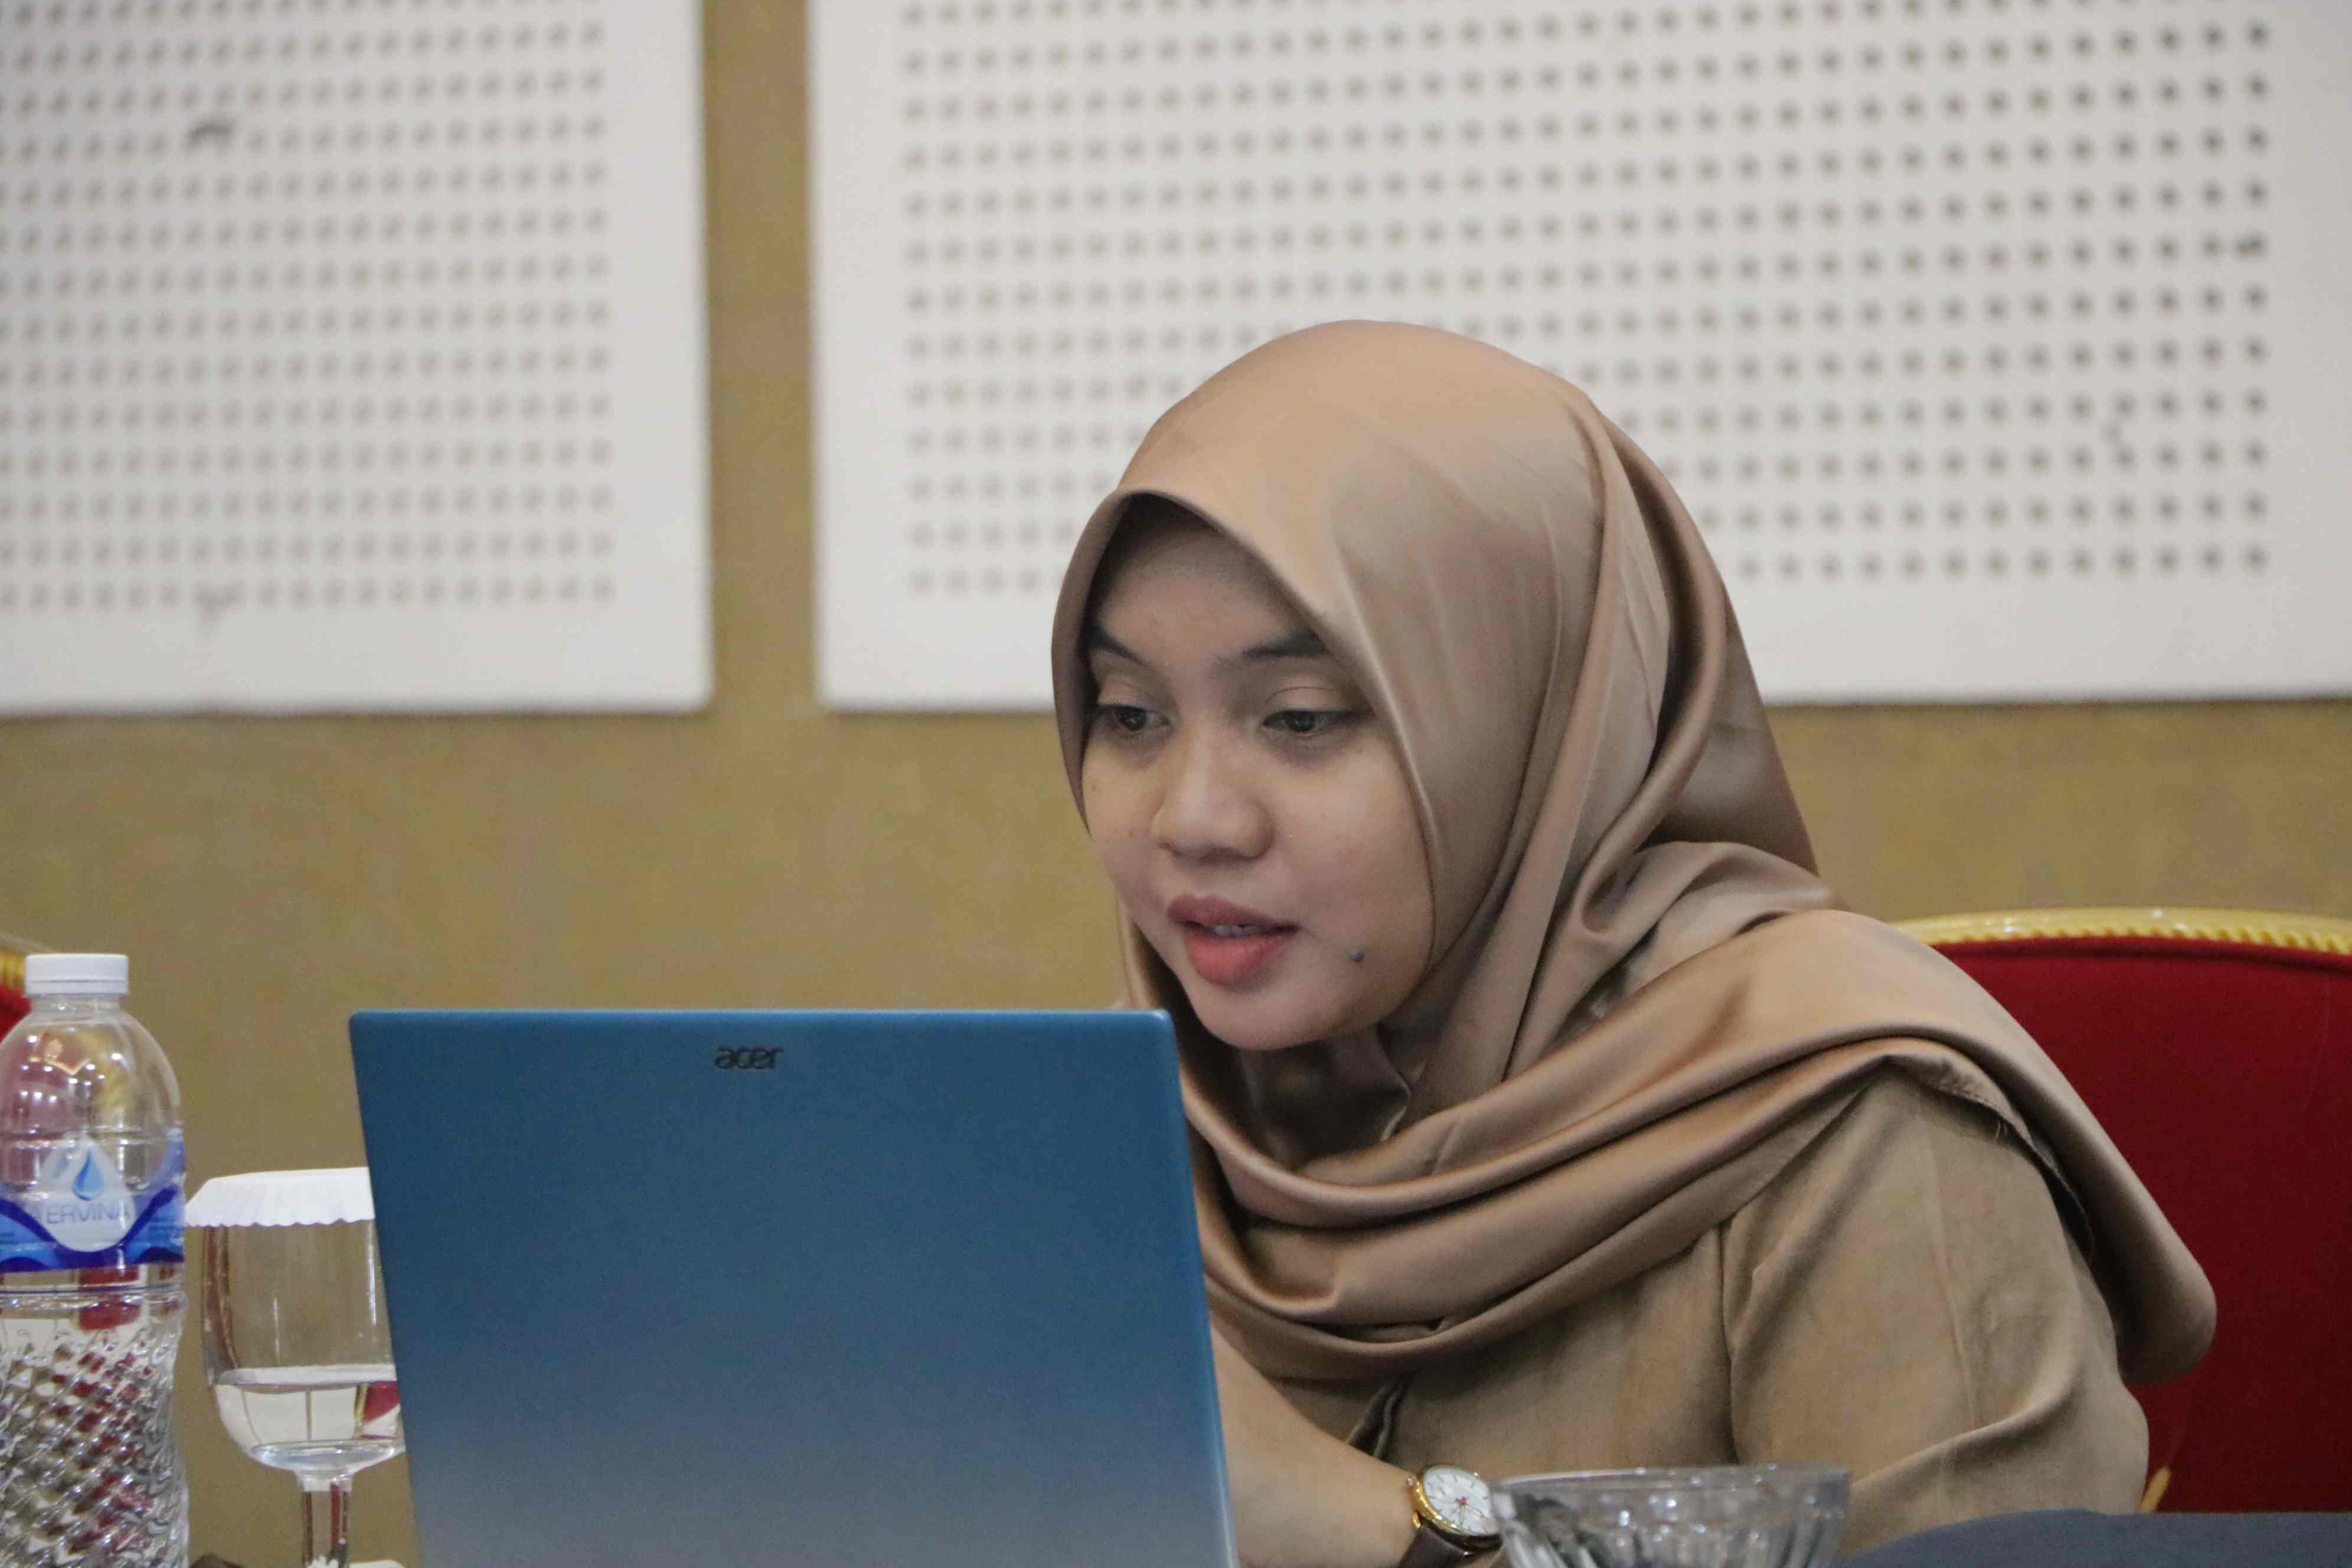 Kegiatan Pendampingan Jurnal Fakultas Hukum UPN “Veteran” Jakarta menuju Akreditasi SINTA